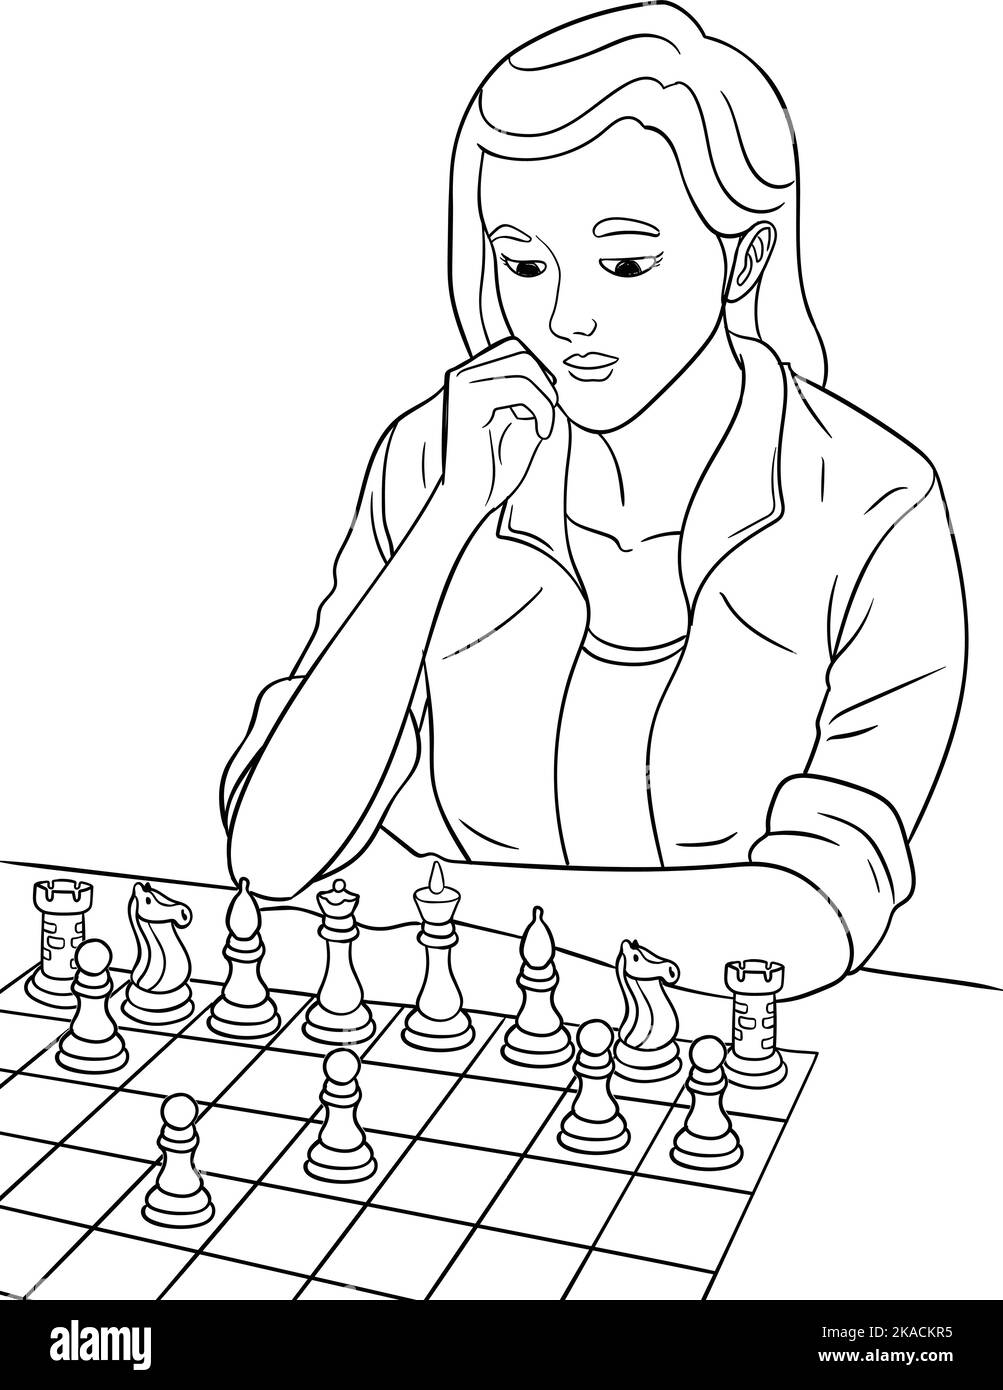 Jeu d'échecs page de coloriage isolée pour enfants Illustration de Vecteur